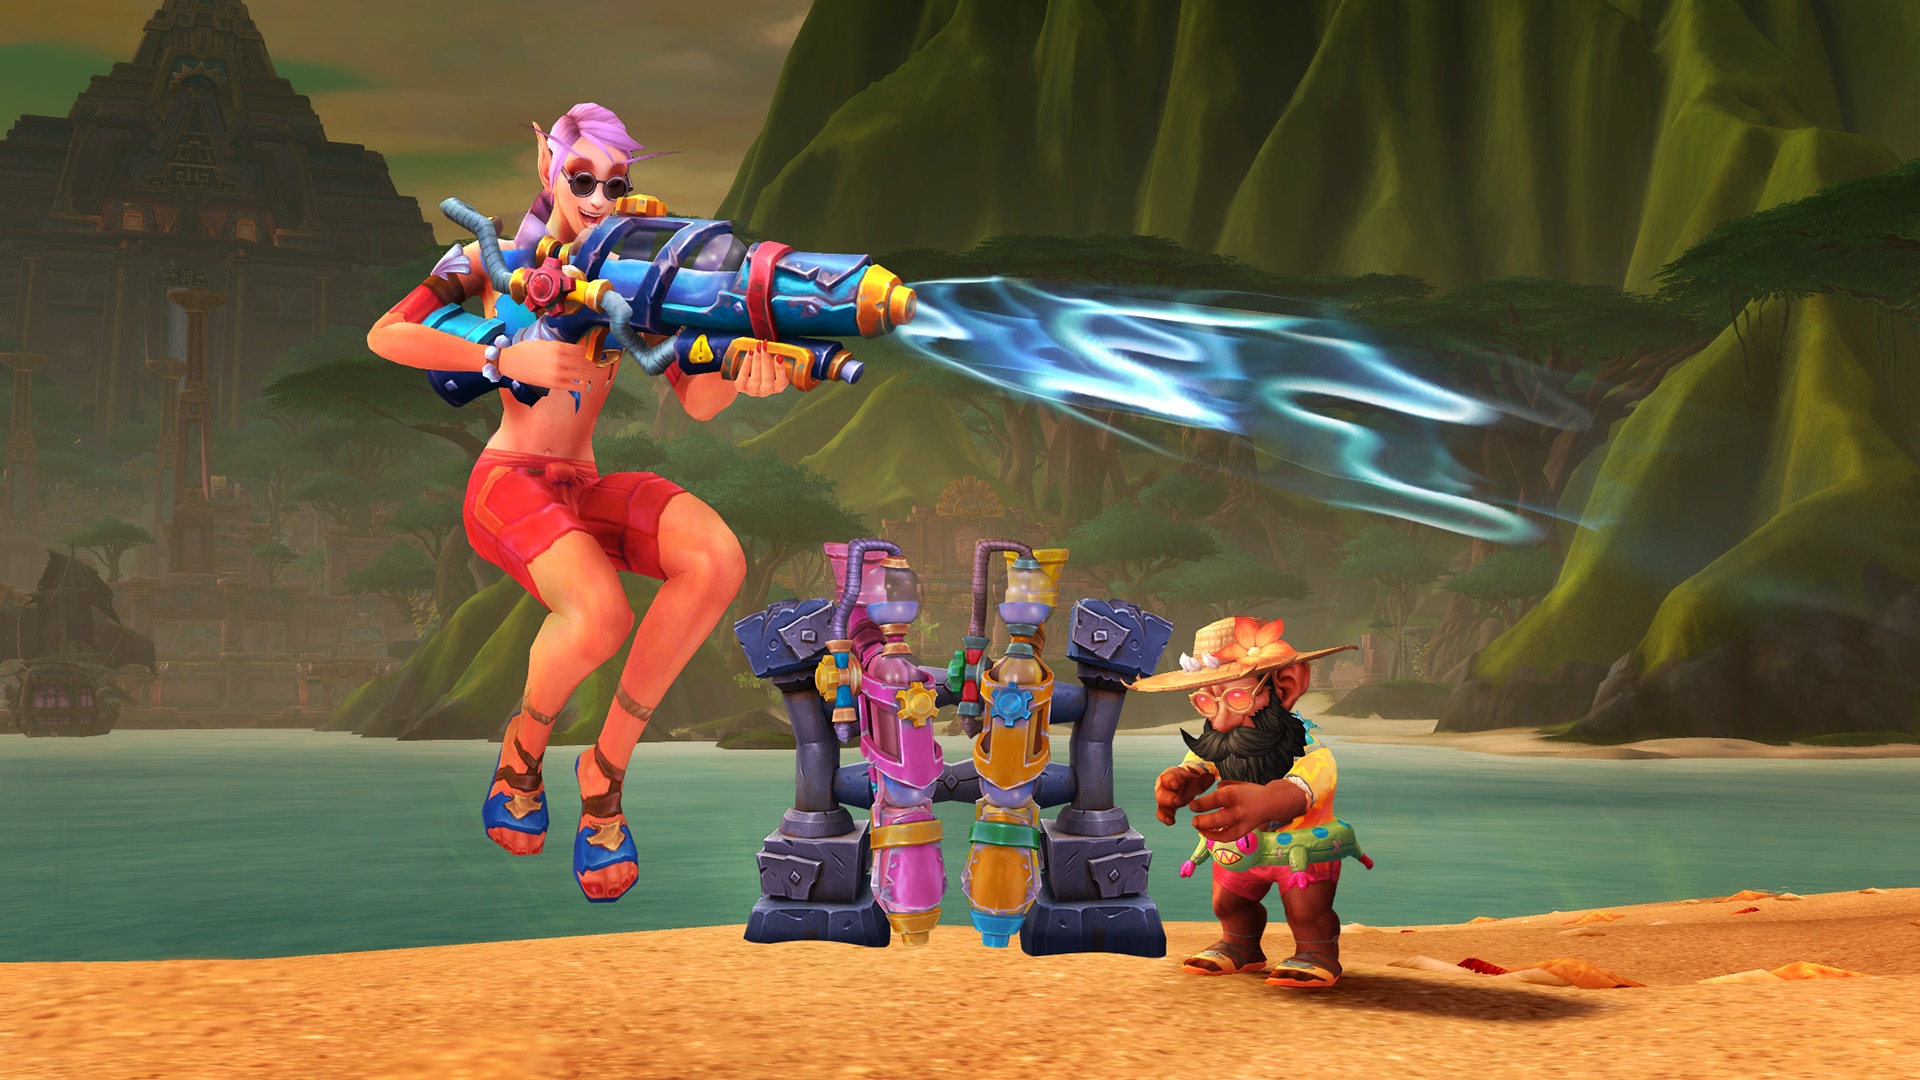 gnomo de roupas de praia ao lado de um suporte com várias armas de água enquanto outro personagem atira com outra arma de água